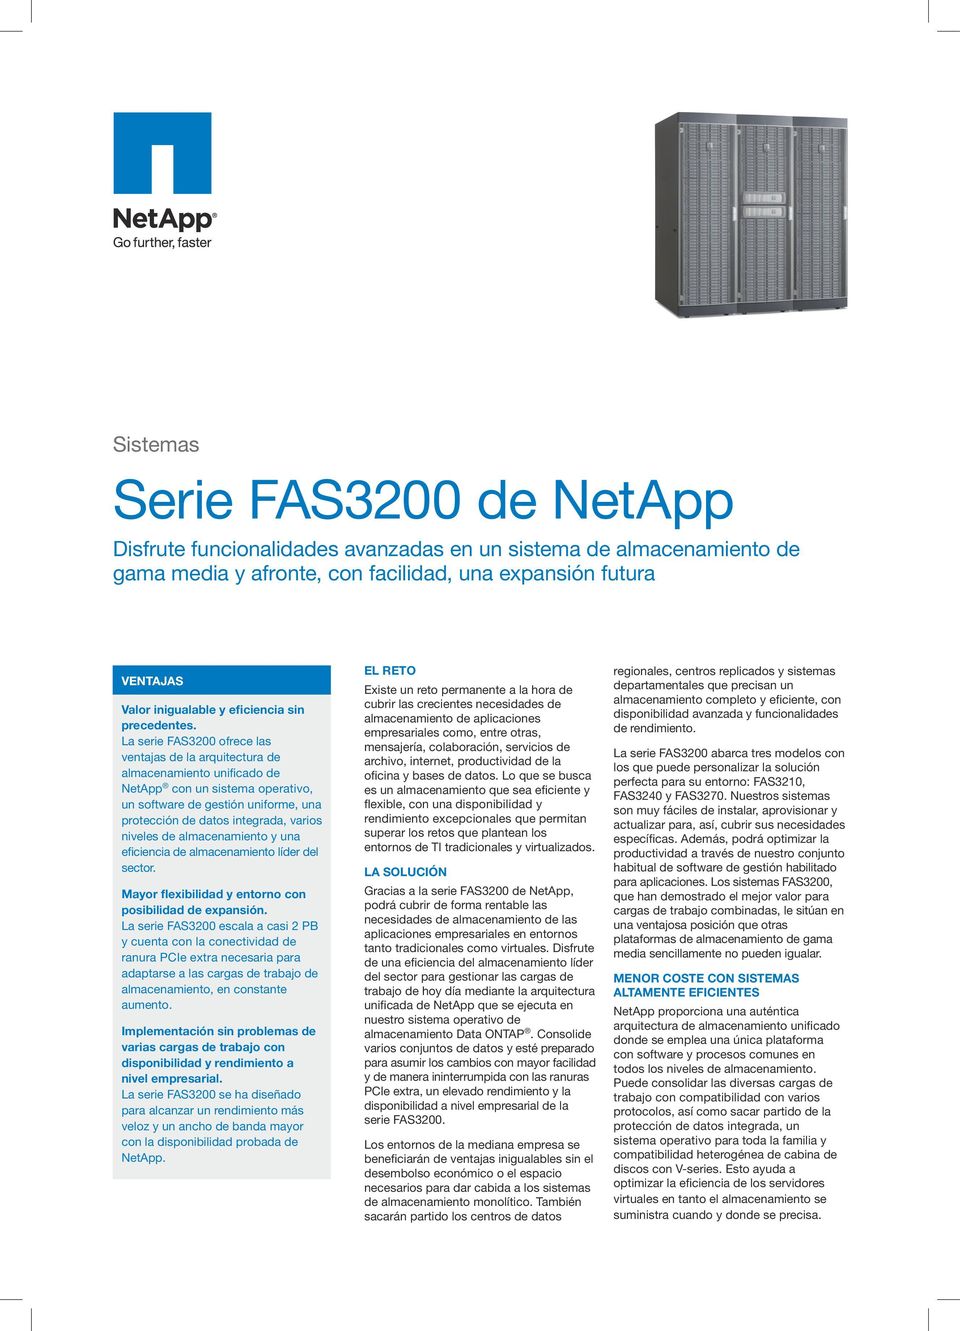 La serie FAS3200 ofrece las ventajas de la arquitectura de unificado de NetApp con un sistema operativo, un software de gestión uniforme, una protección de datos integrada, varios niveles de y una